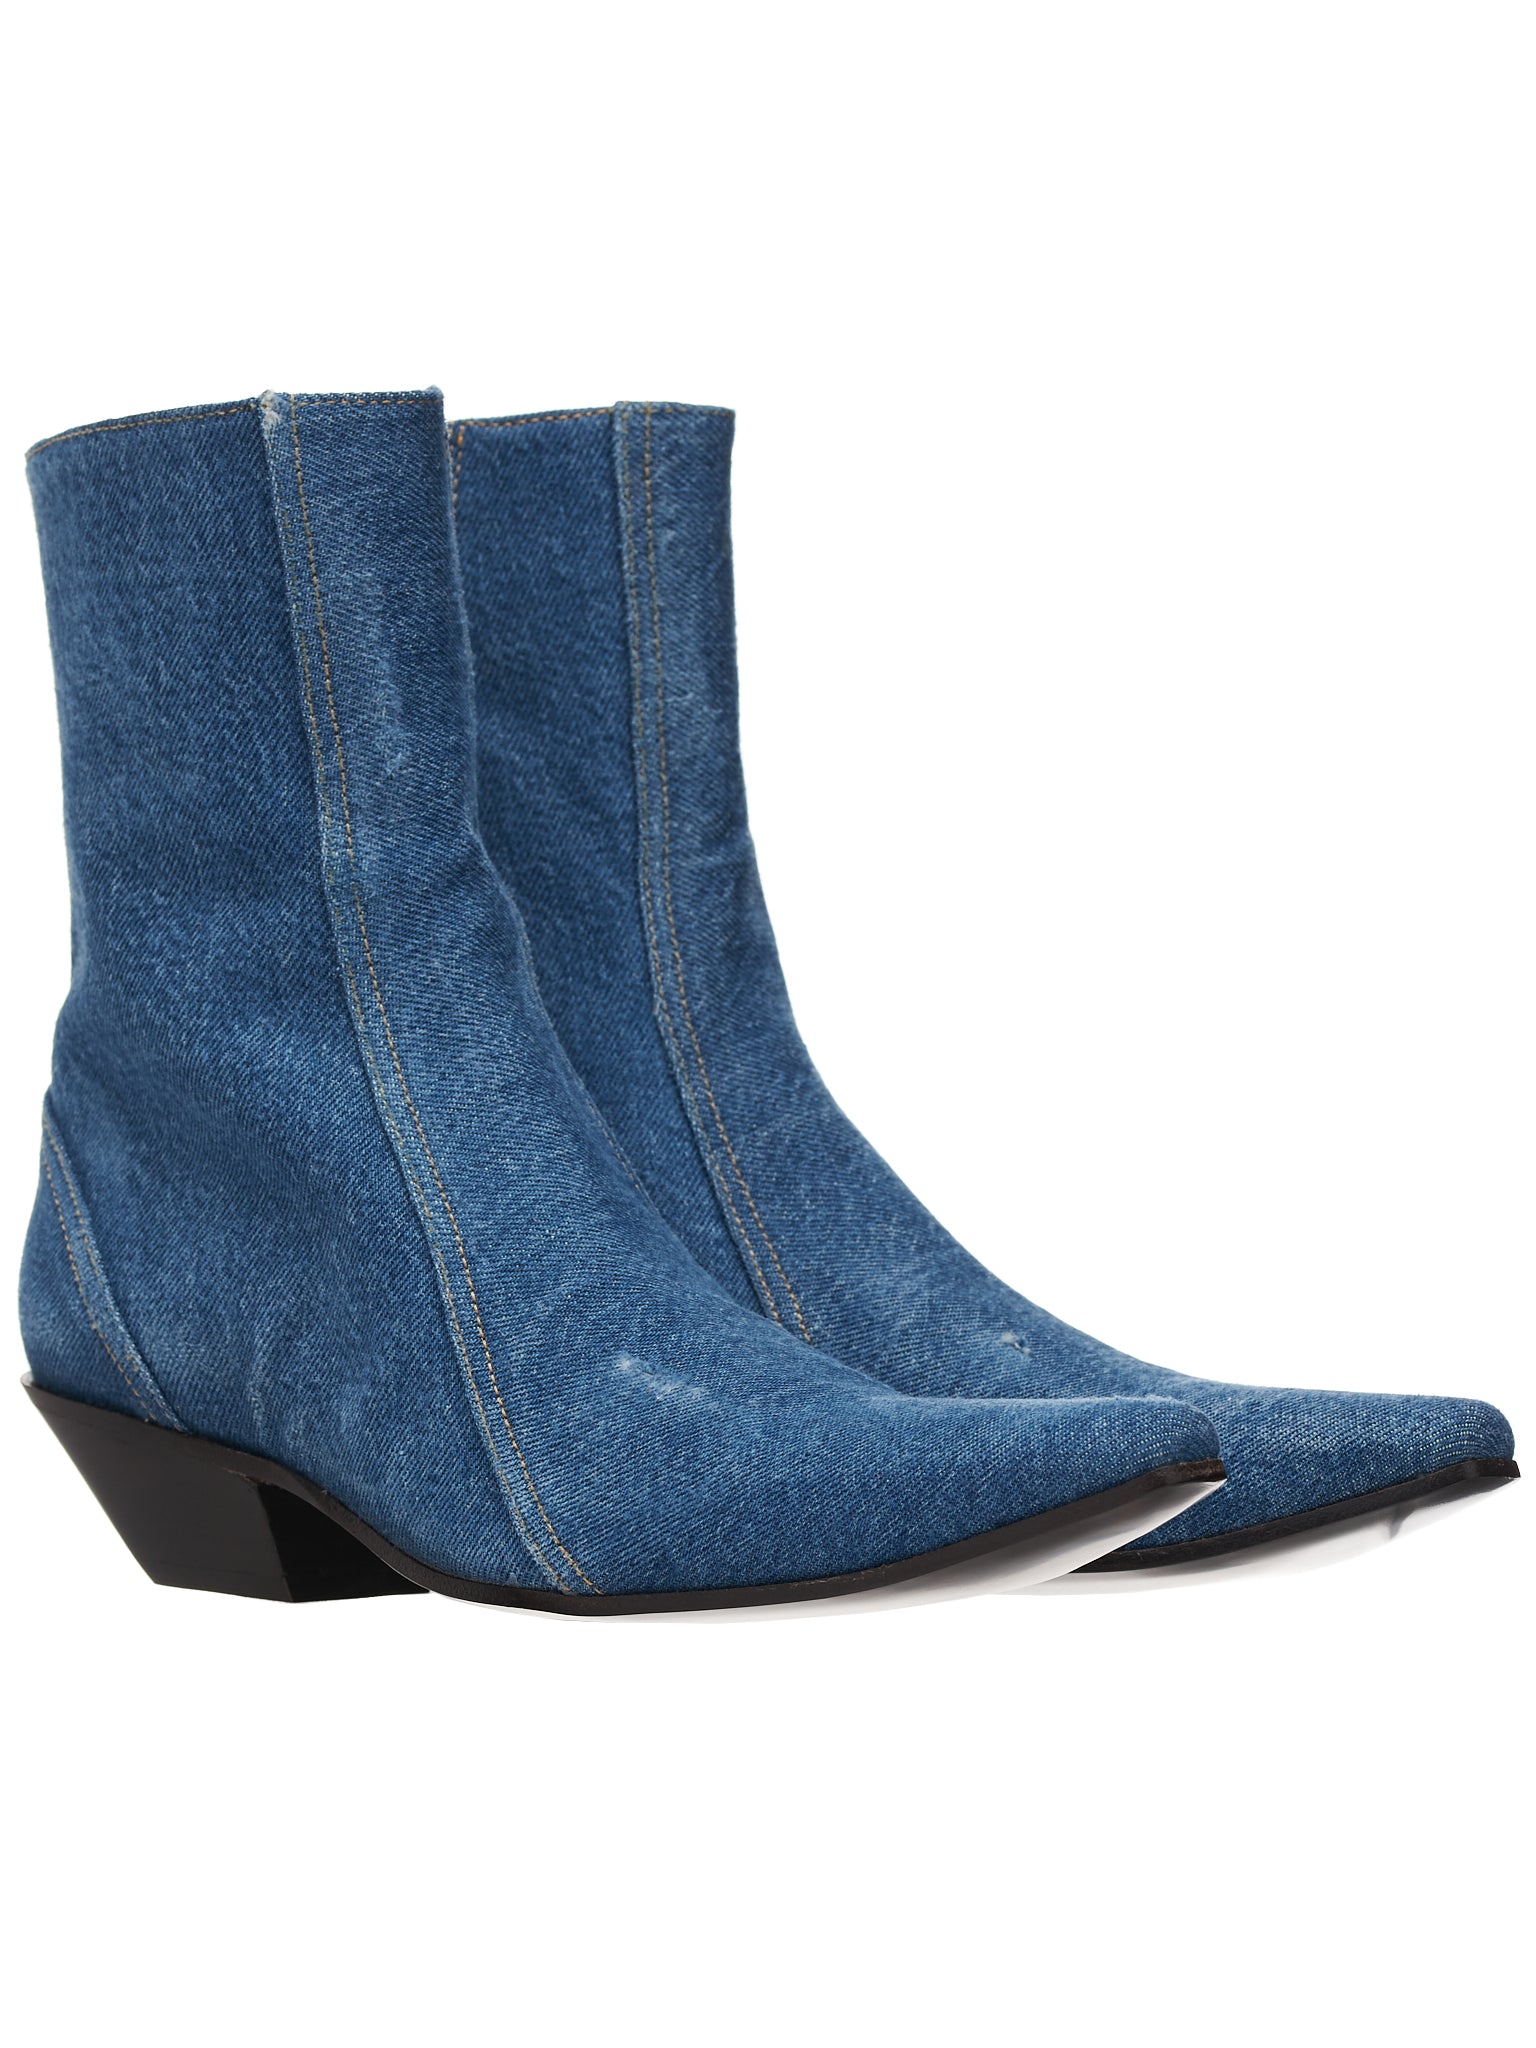 Denim Ankle Boots (SHOE000681-DENIM-BLUE)